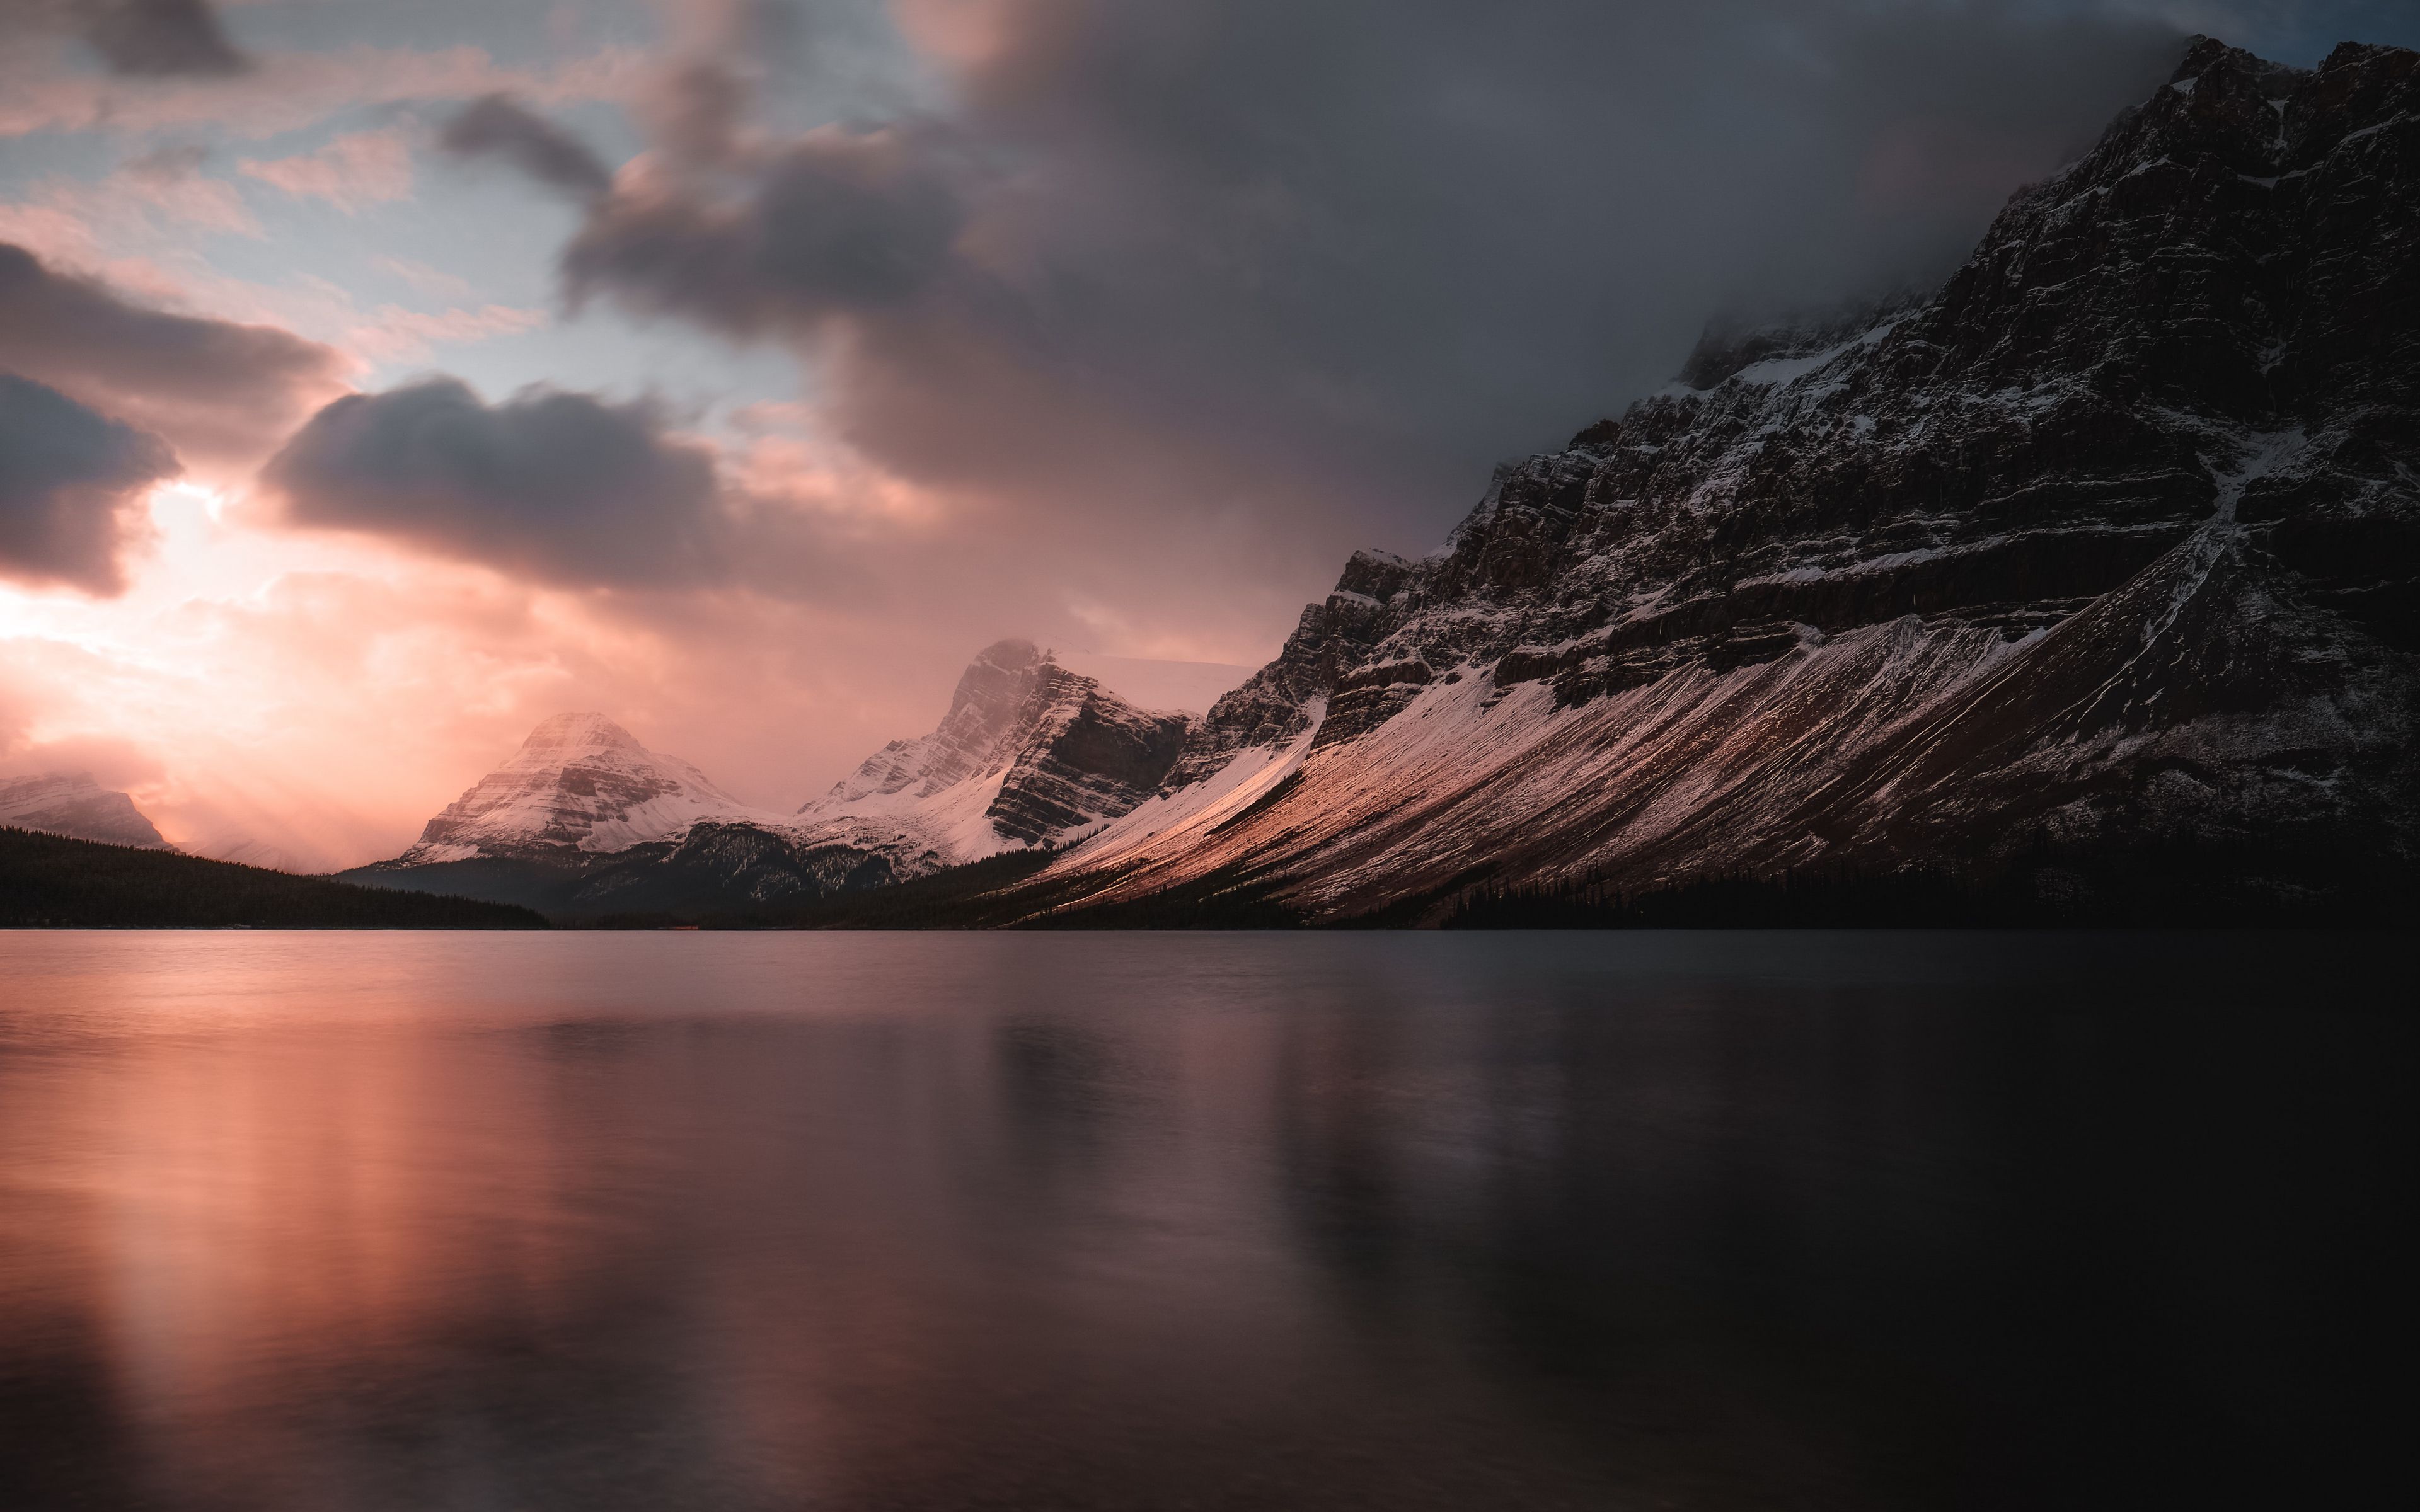 Download wallpaper 3840x2400 lake, mountains, sunset, dusk